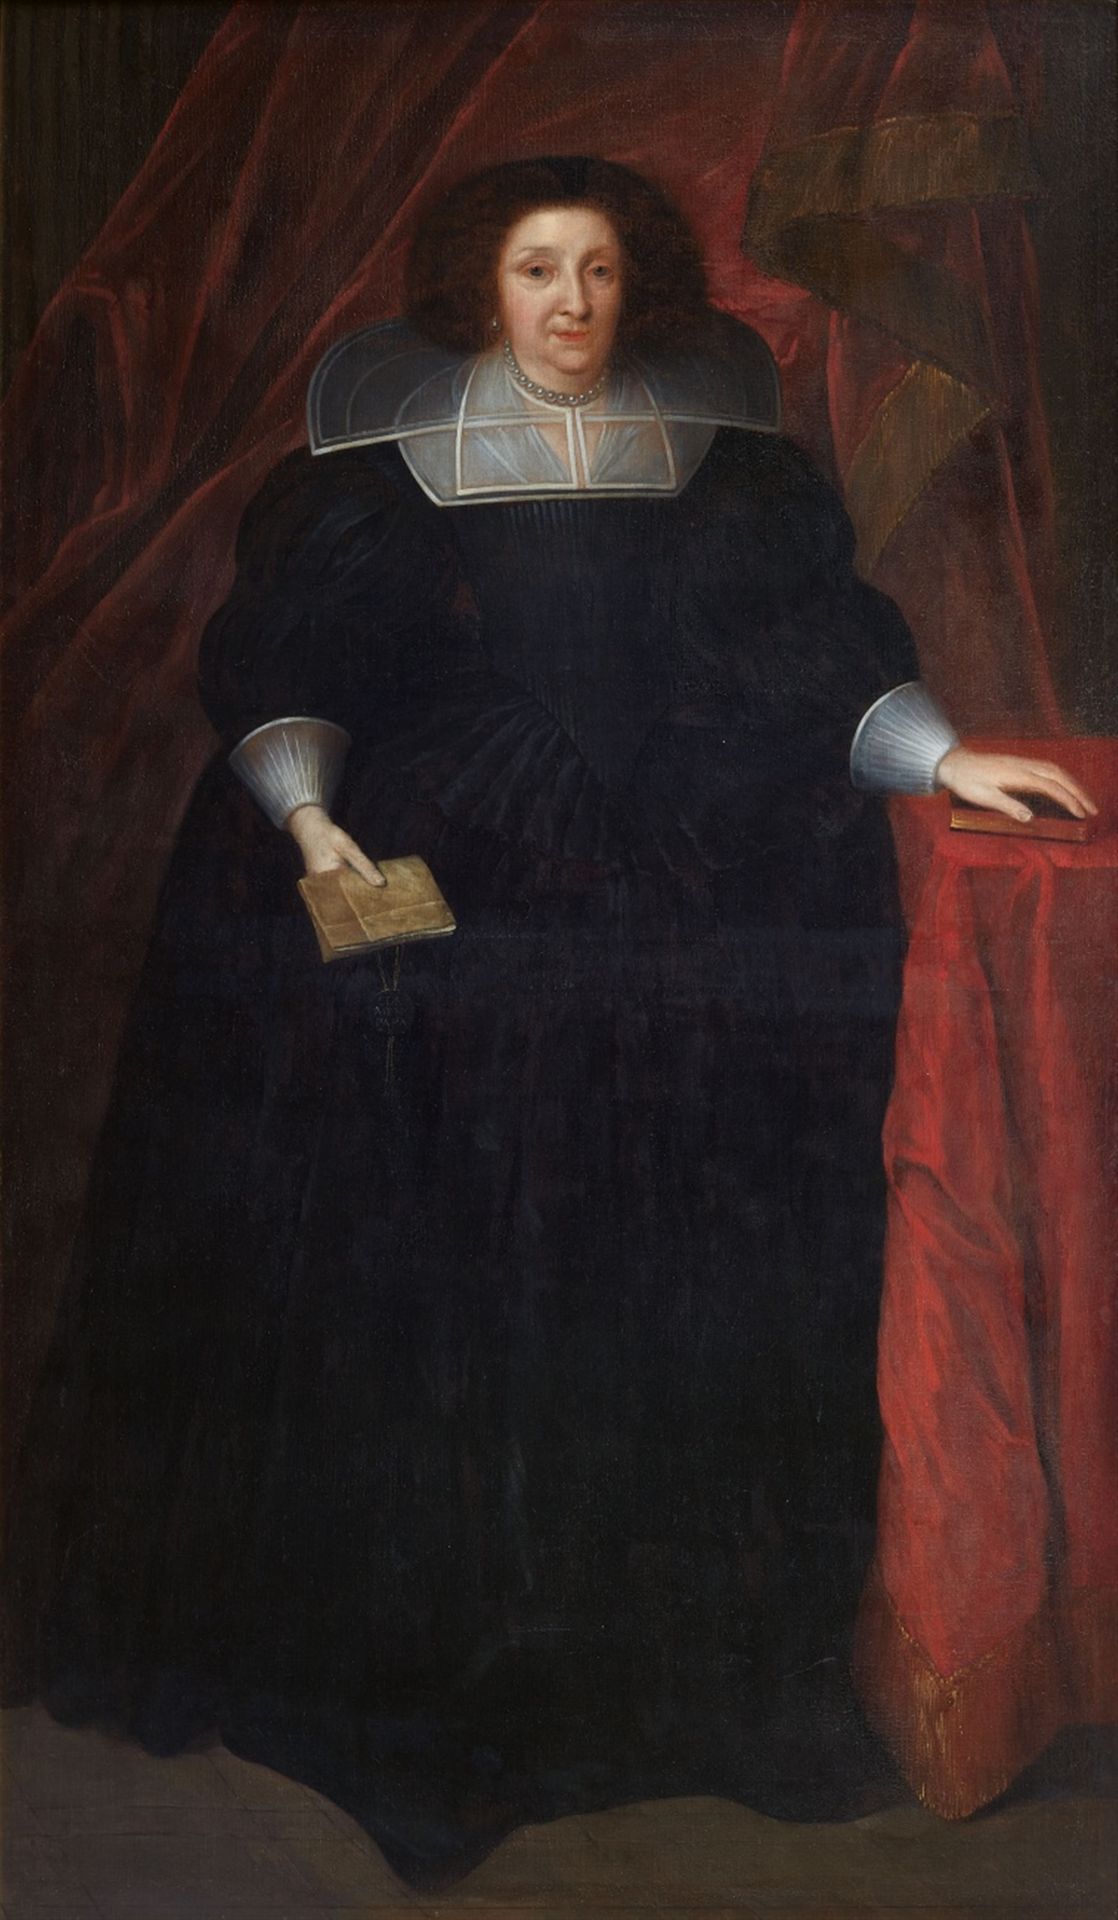 Flemish School around 1620 / 25, Portrait of Marguerite de Lalaing, Comtesse de Berlaymont